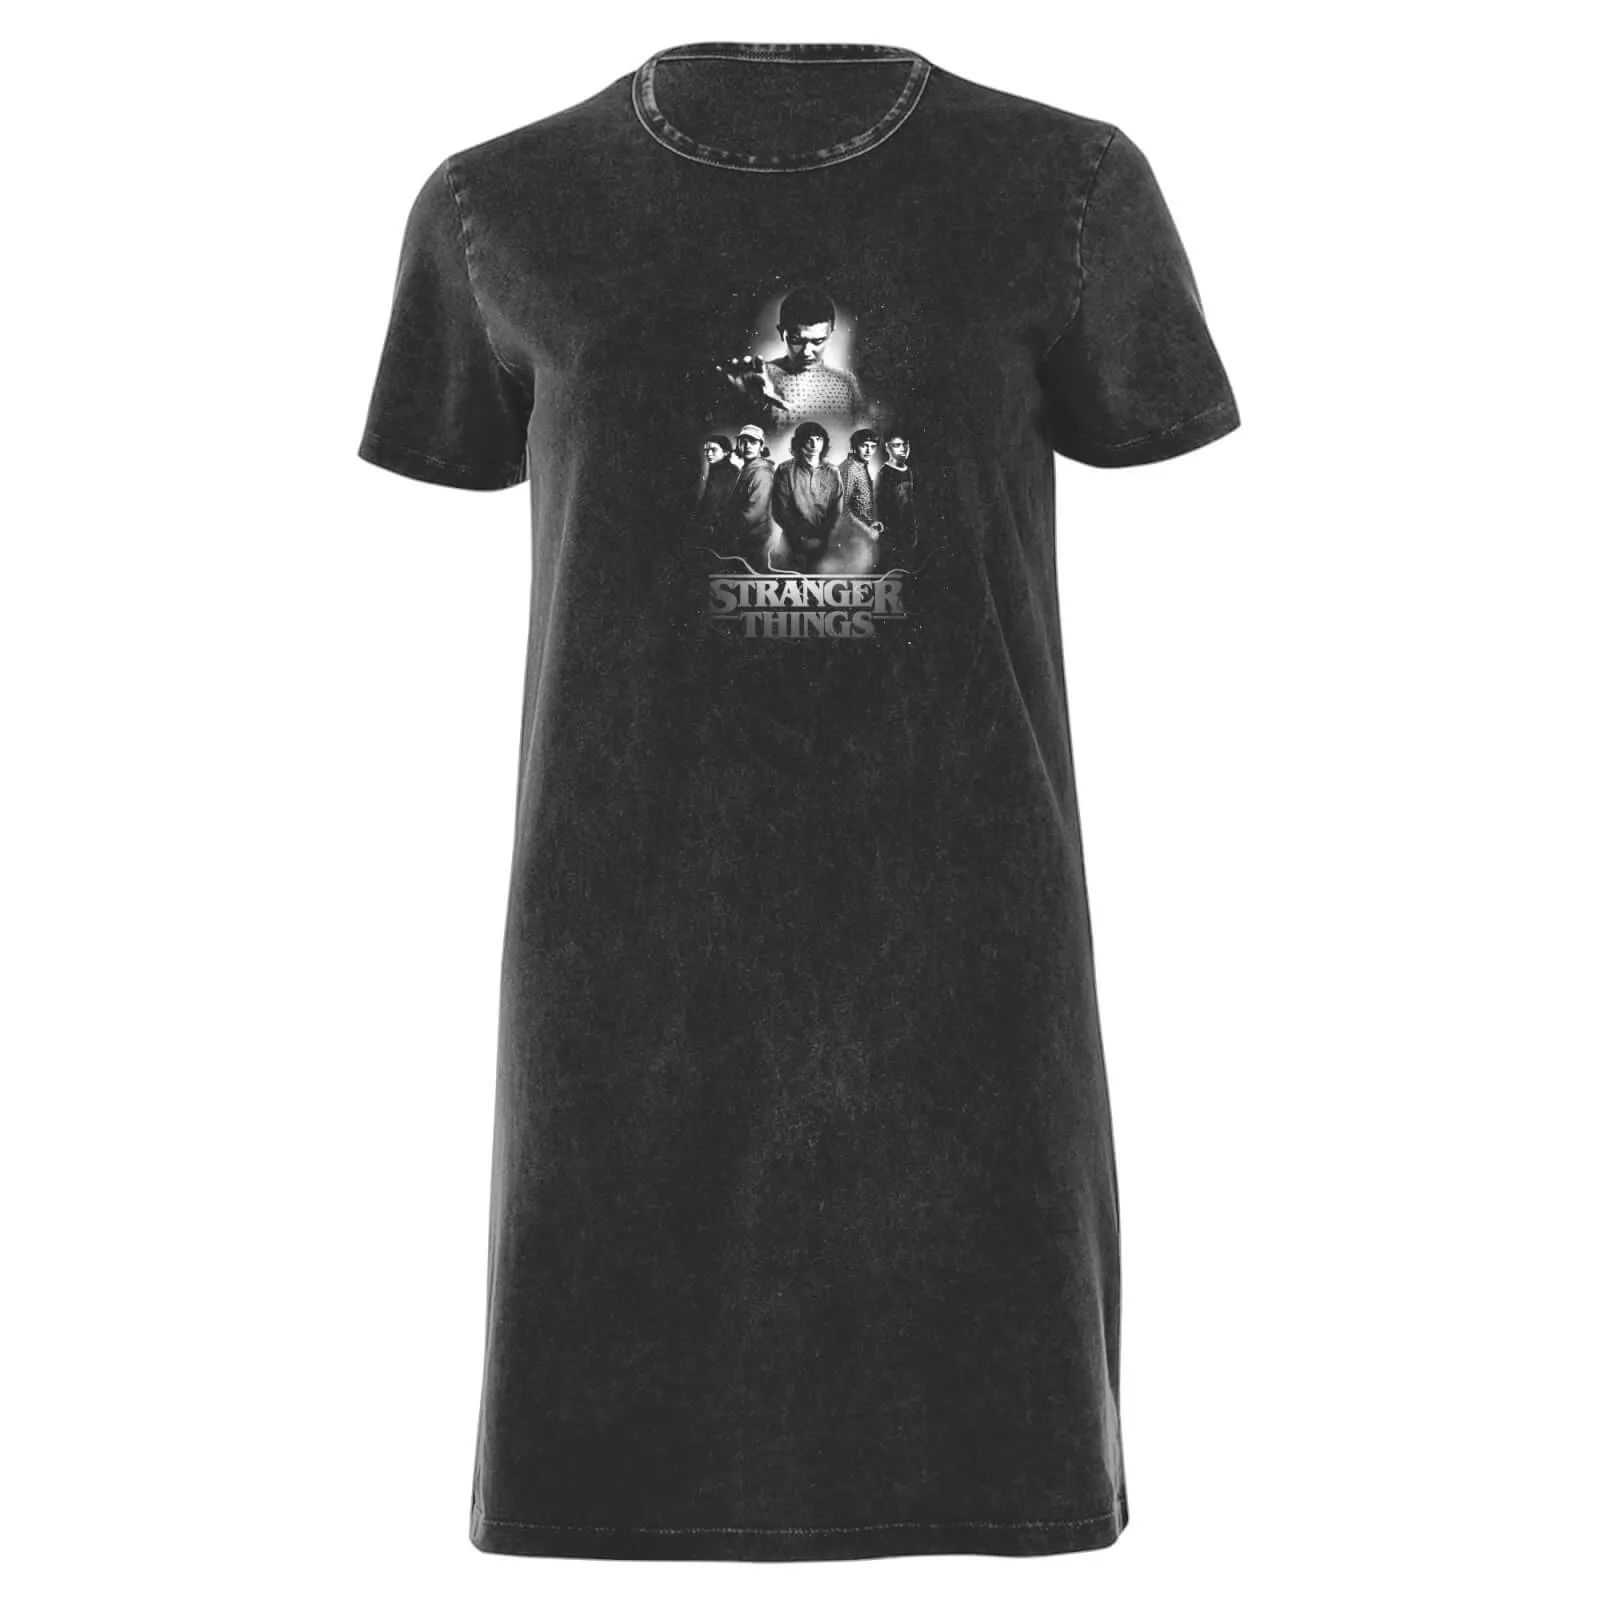  - Vestito T-shirt da donna con composizione dei personaggi in bianco e nero - Lavaggio acido nero - M - Black Acid Wash